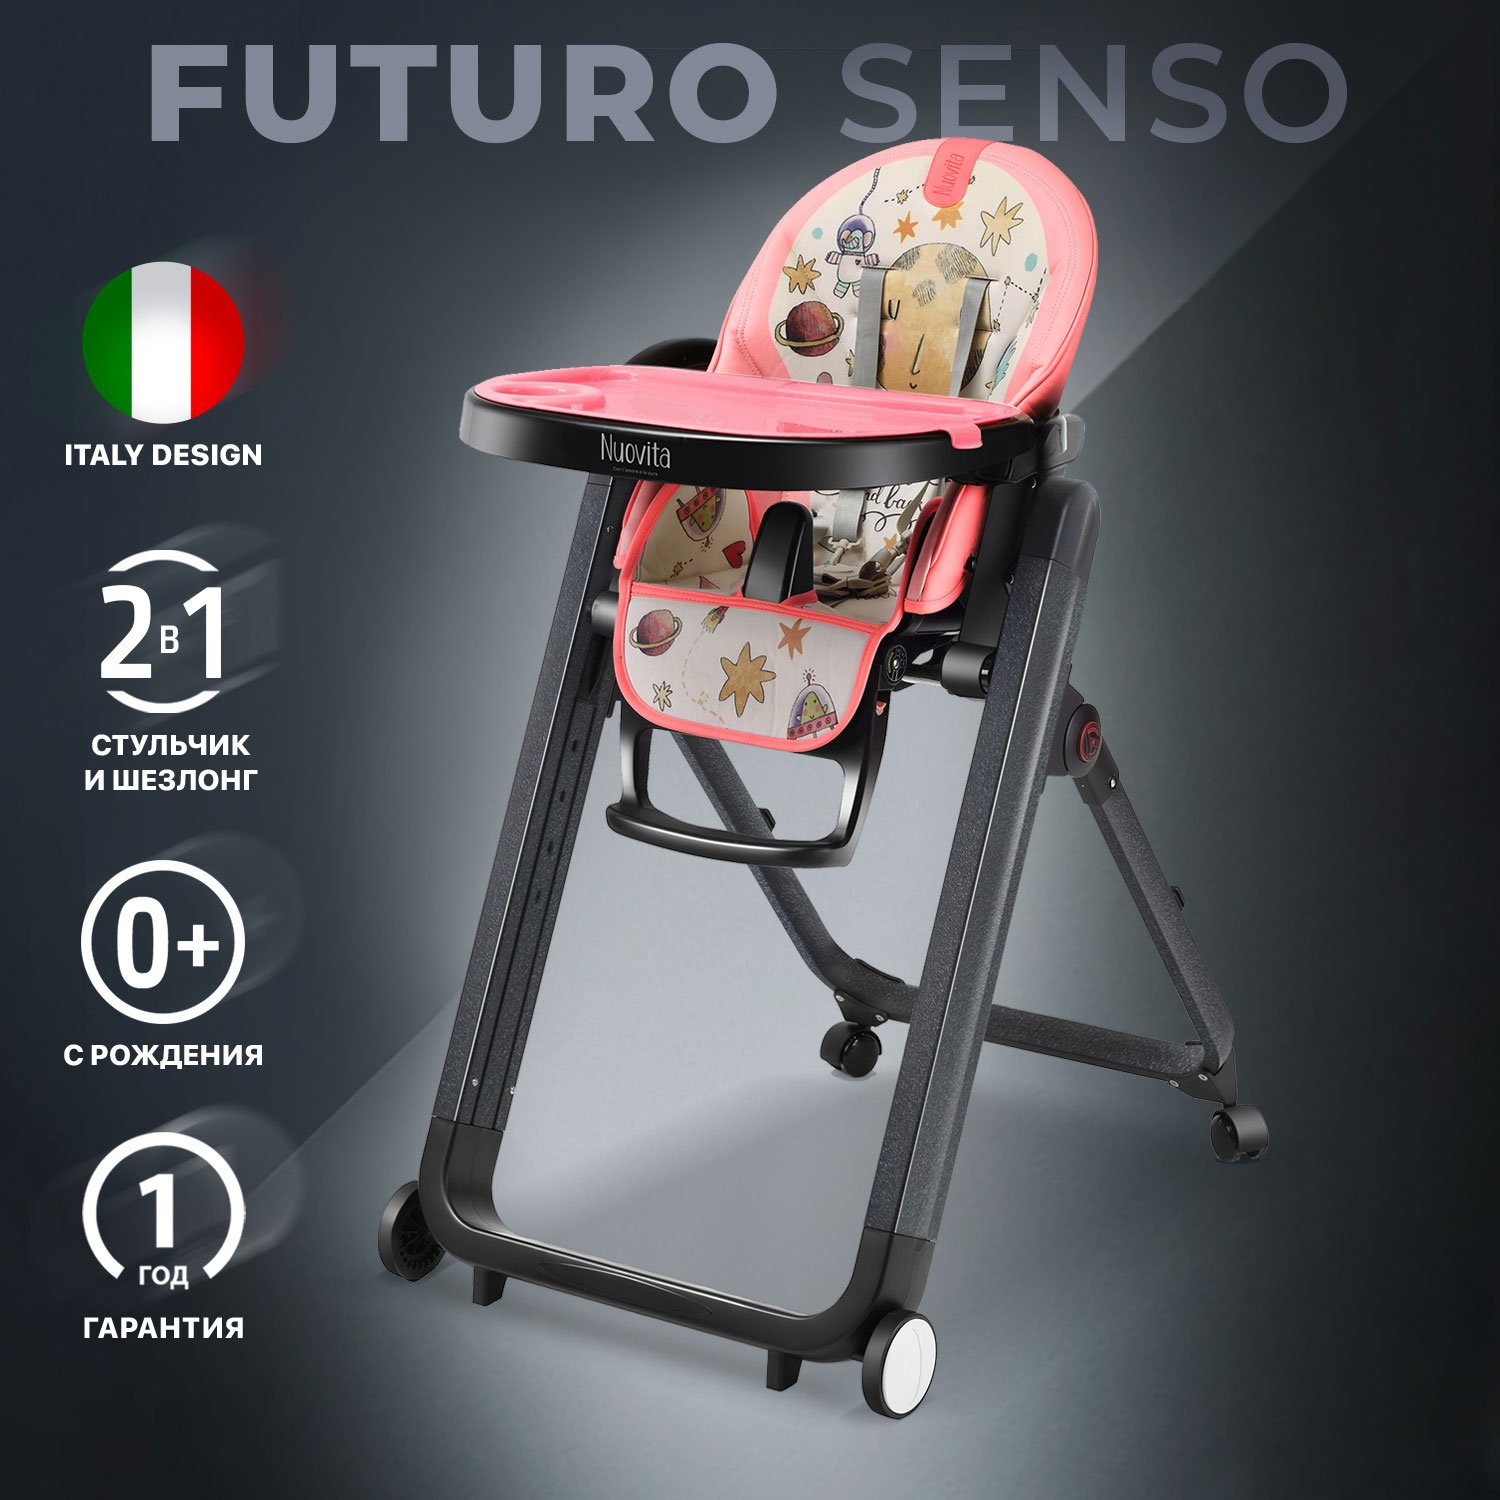 Стульчик для кормления Nuovita Futuro Senso Nero (Cosmo rosa/Розовый космос) стульчик для кормления nuovita futuro bianco cosmo rosa розовый космос